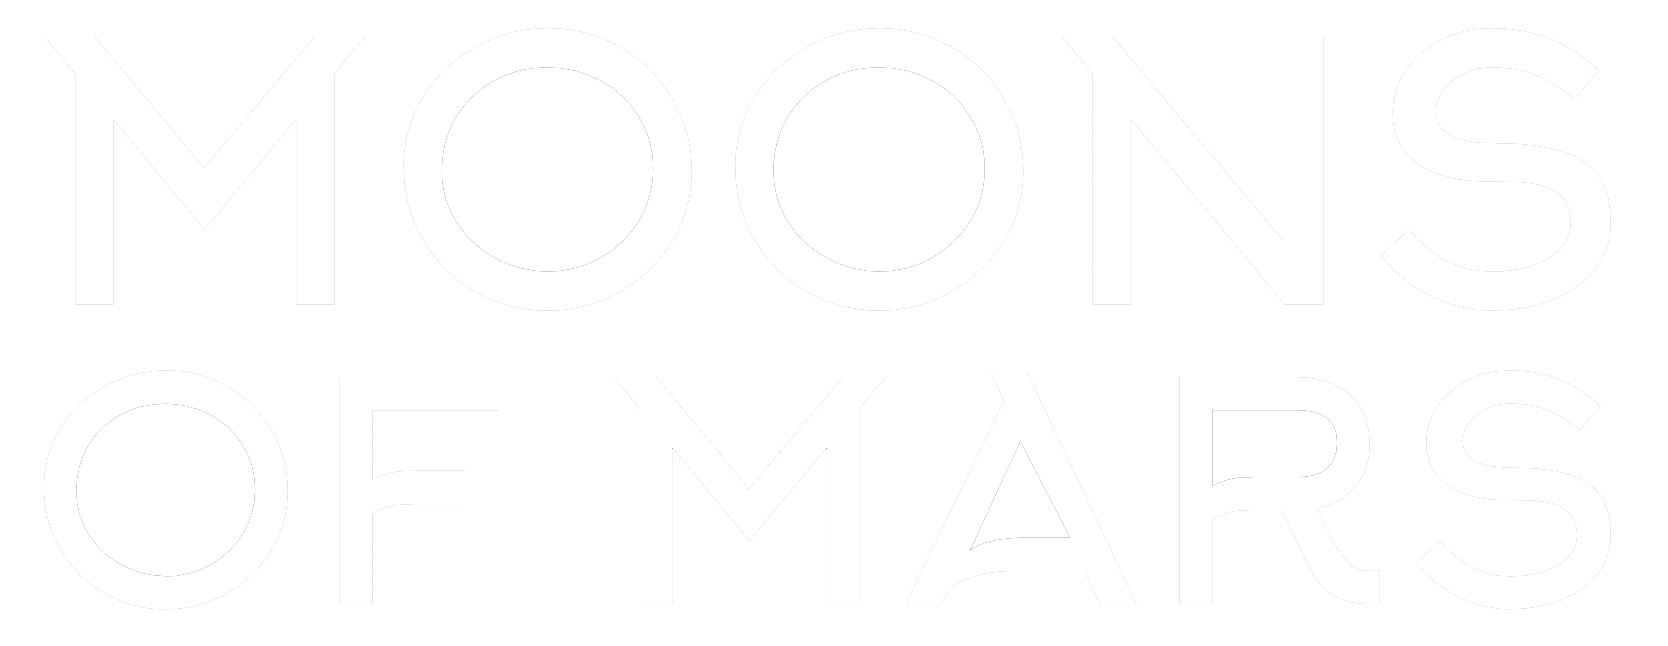 Moons of Mars logo